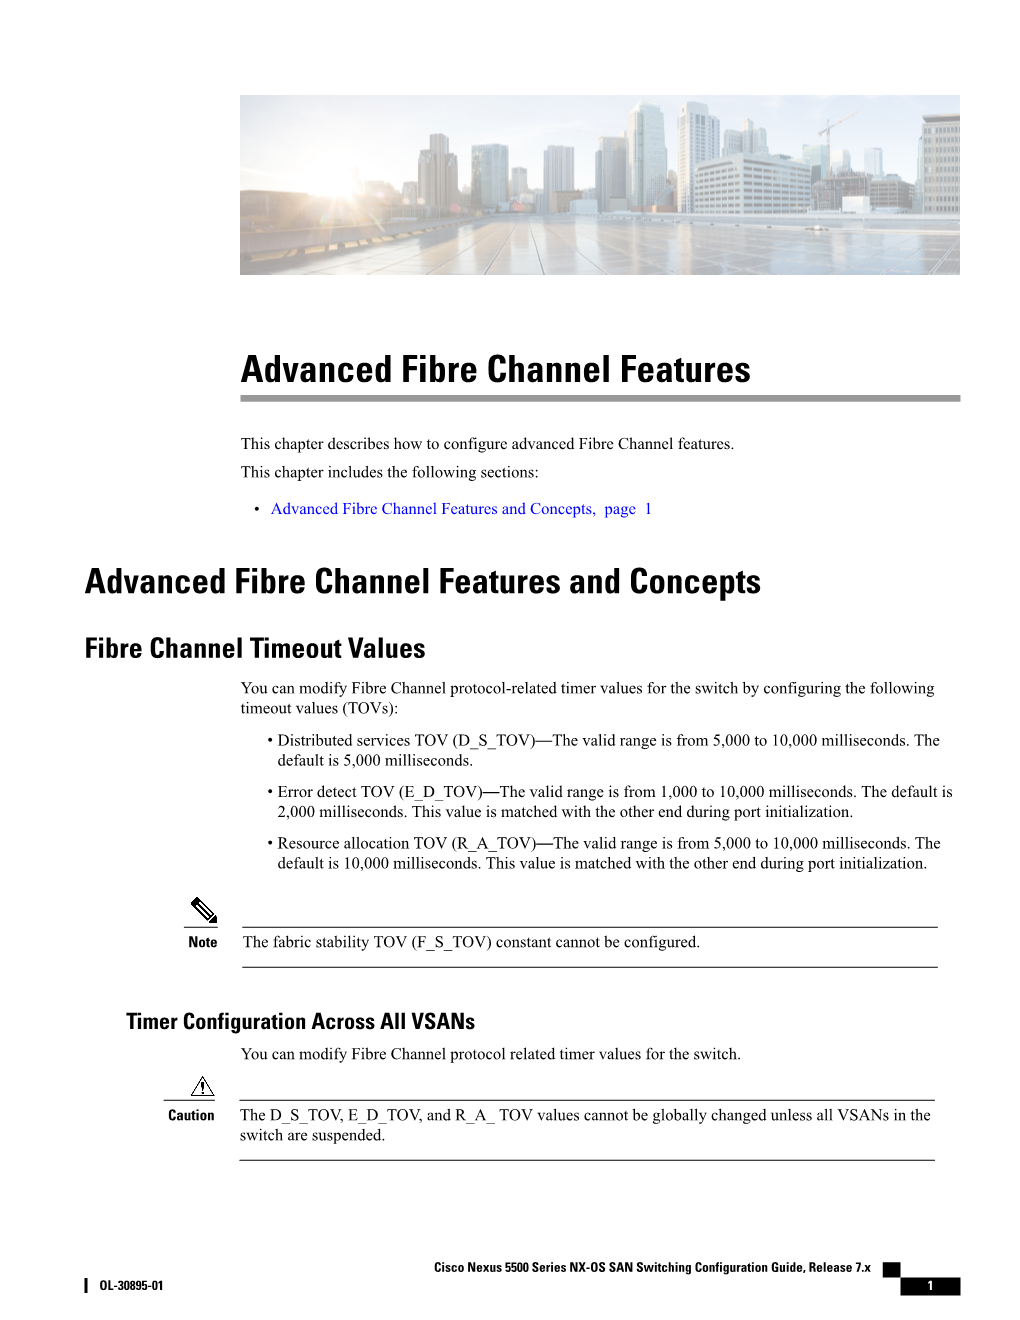 Advanced Fibre Channel Features